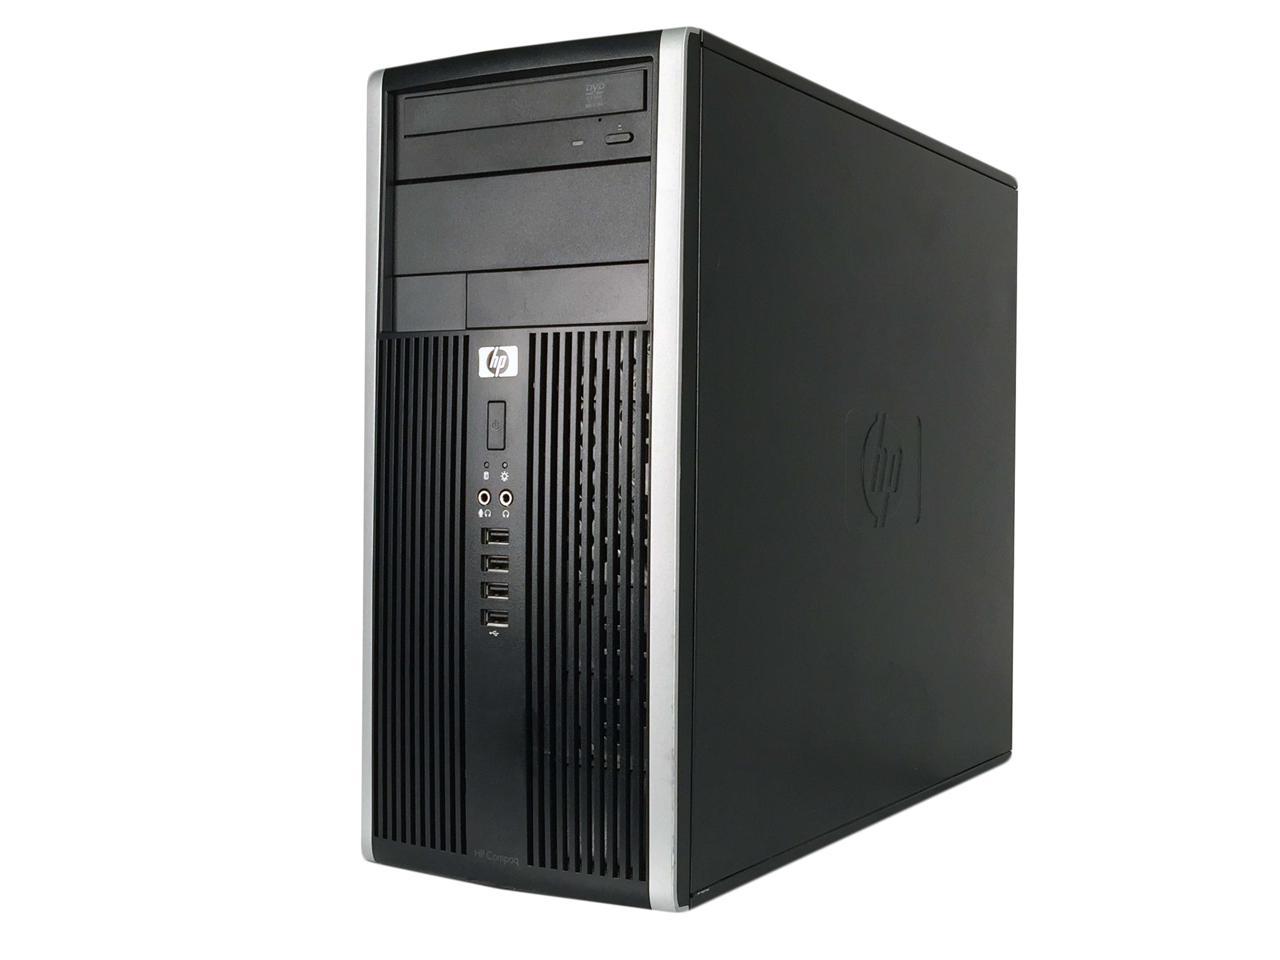 HP Compaq 6200 Pro Tower Intel Core i5 2400 3.10 GHz, 12 GB DDR3, Brand New 240 GB SSD, DVD, WiFi, BT 4.0, Windows 10 Pro 64-bit